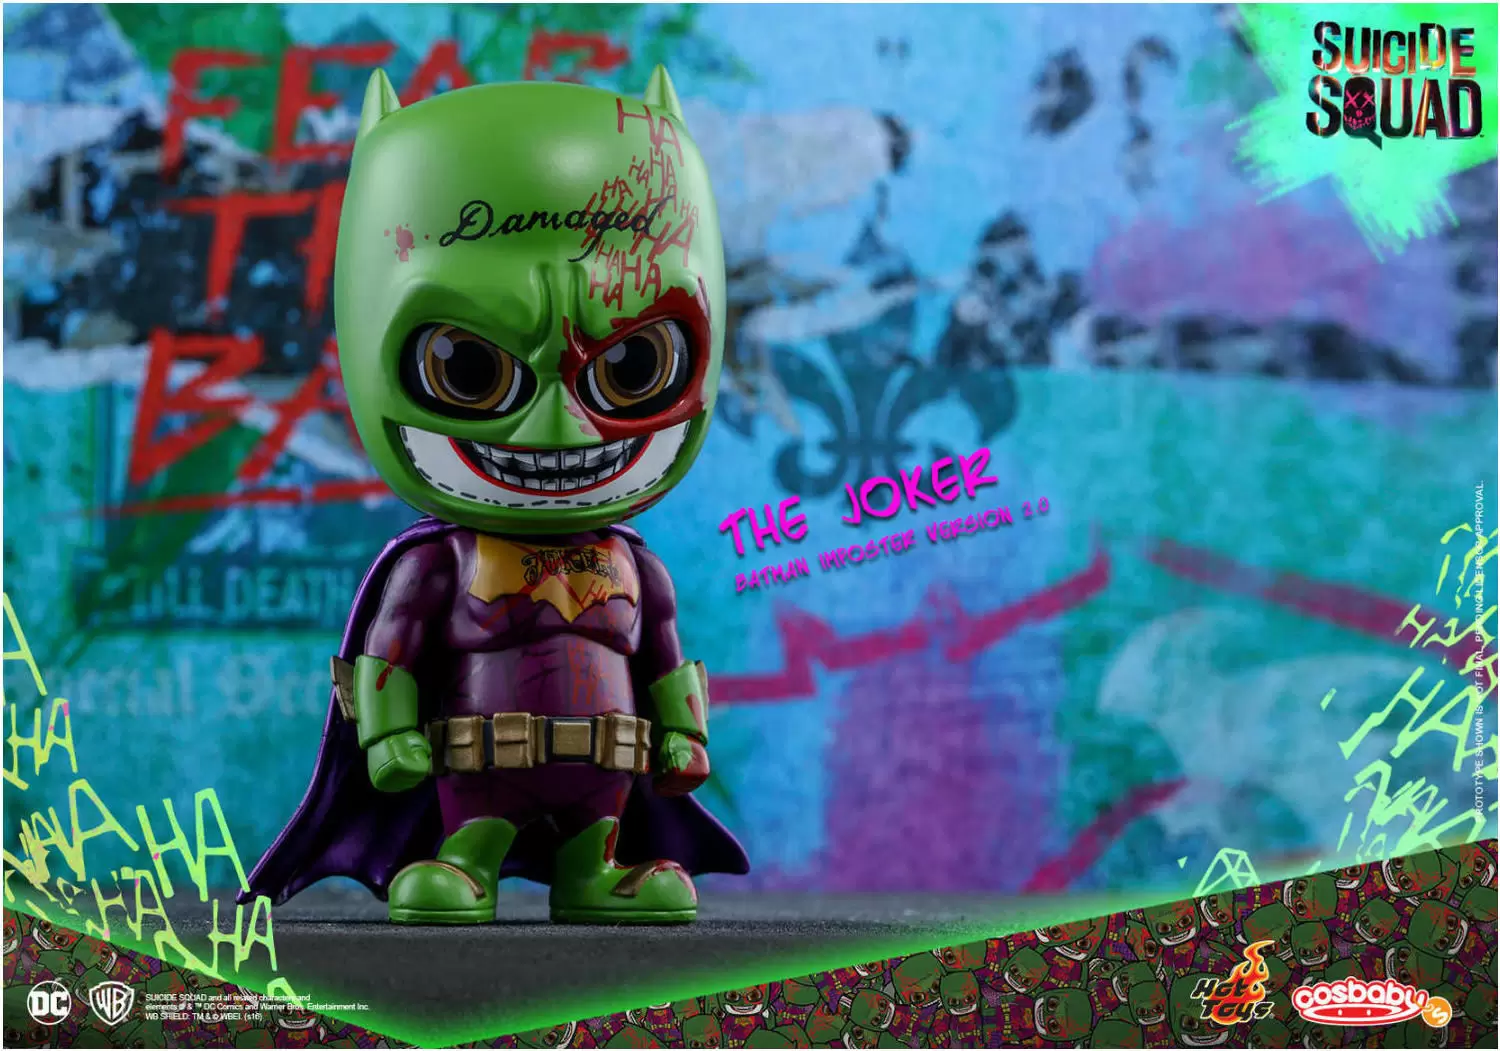 Cosbaby Figures - The Joker Batman Impopster Version 2.0